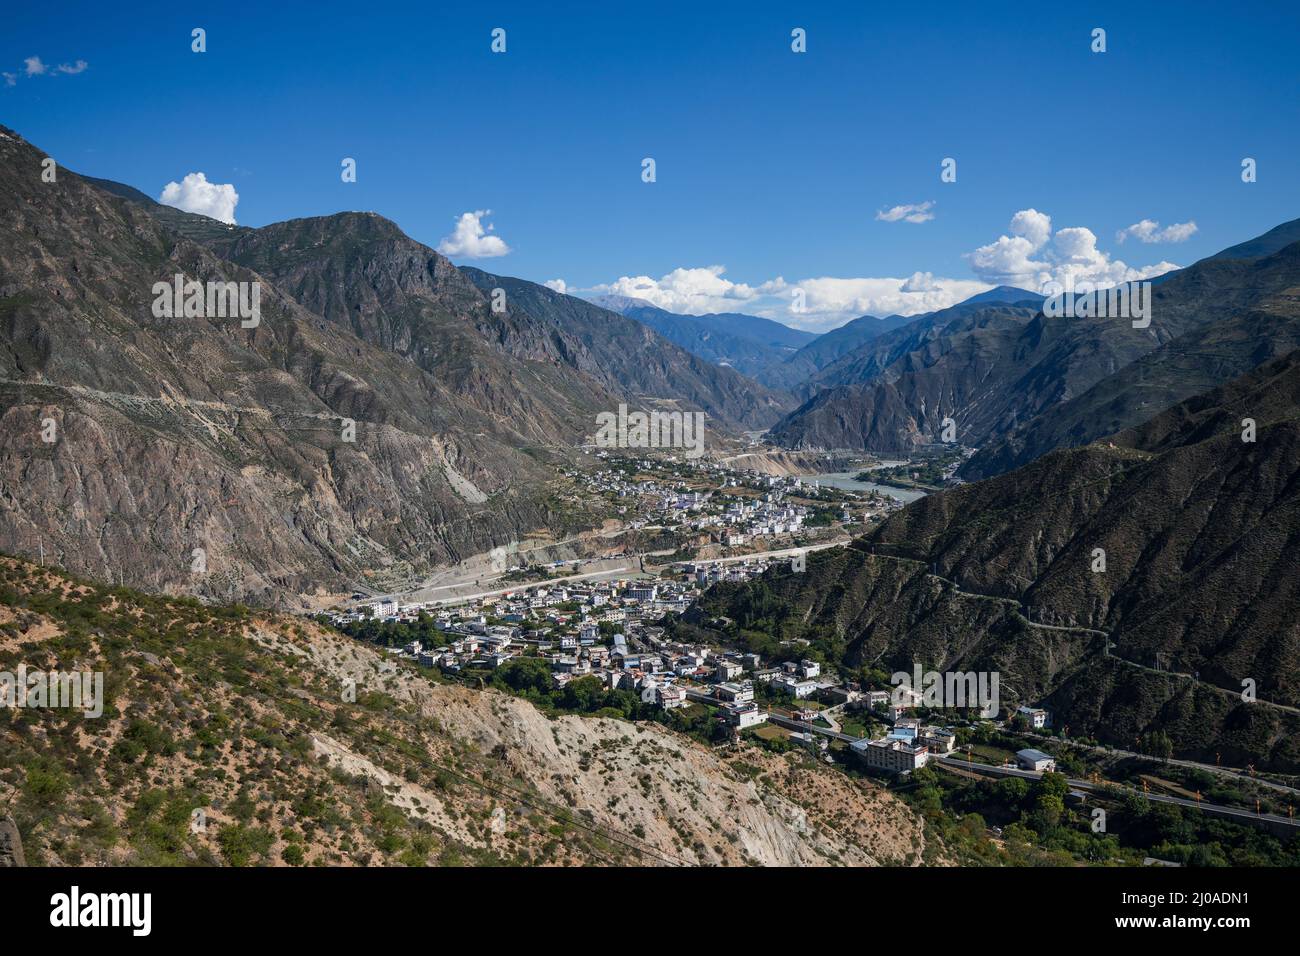 Tibetische Stadt von oben gesehen in einem Tal mit blauem Himmel Stockfoto